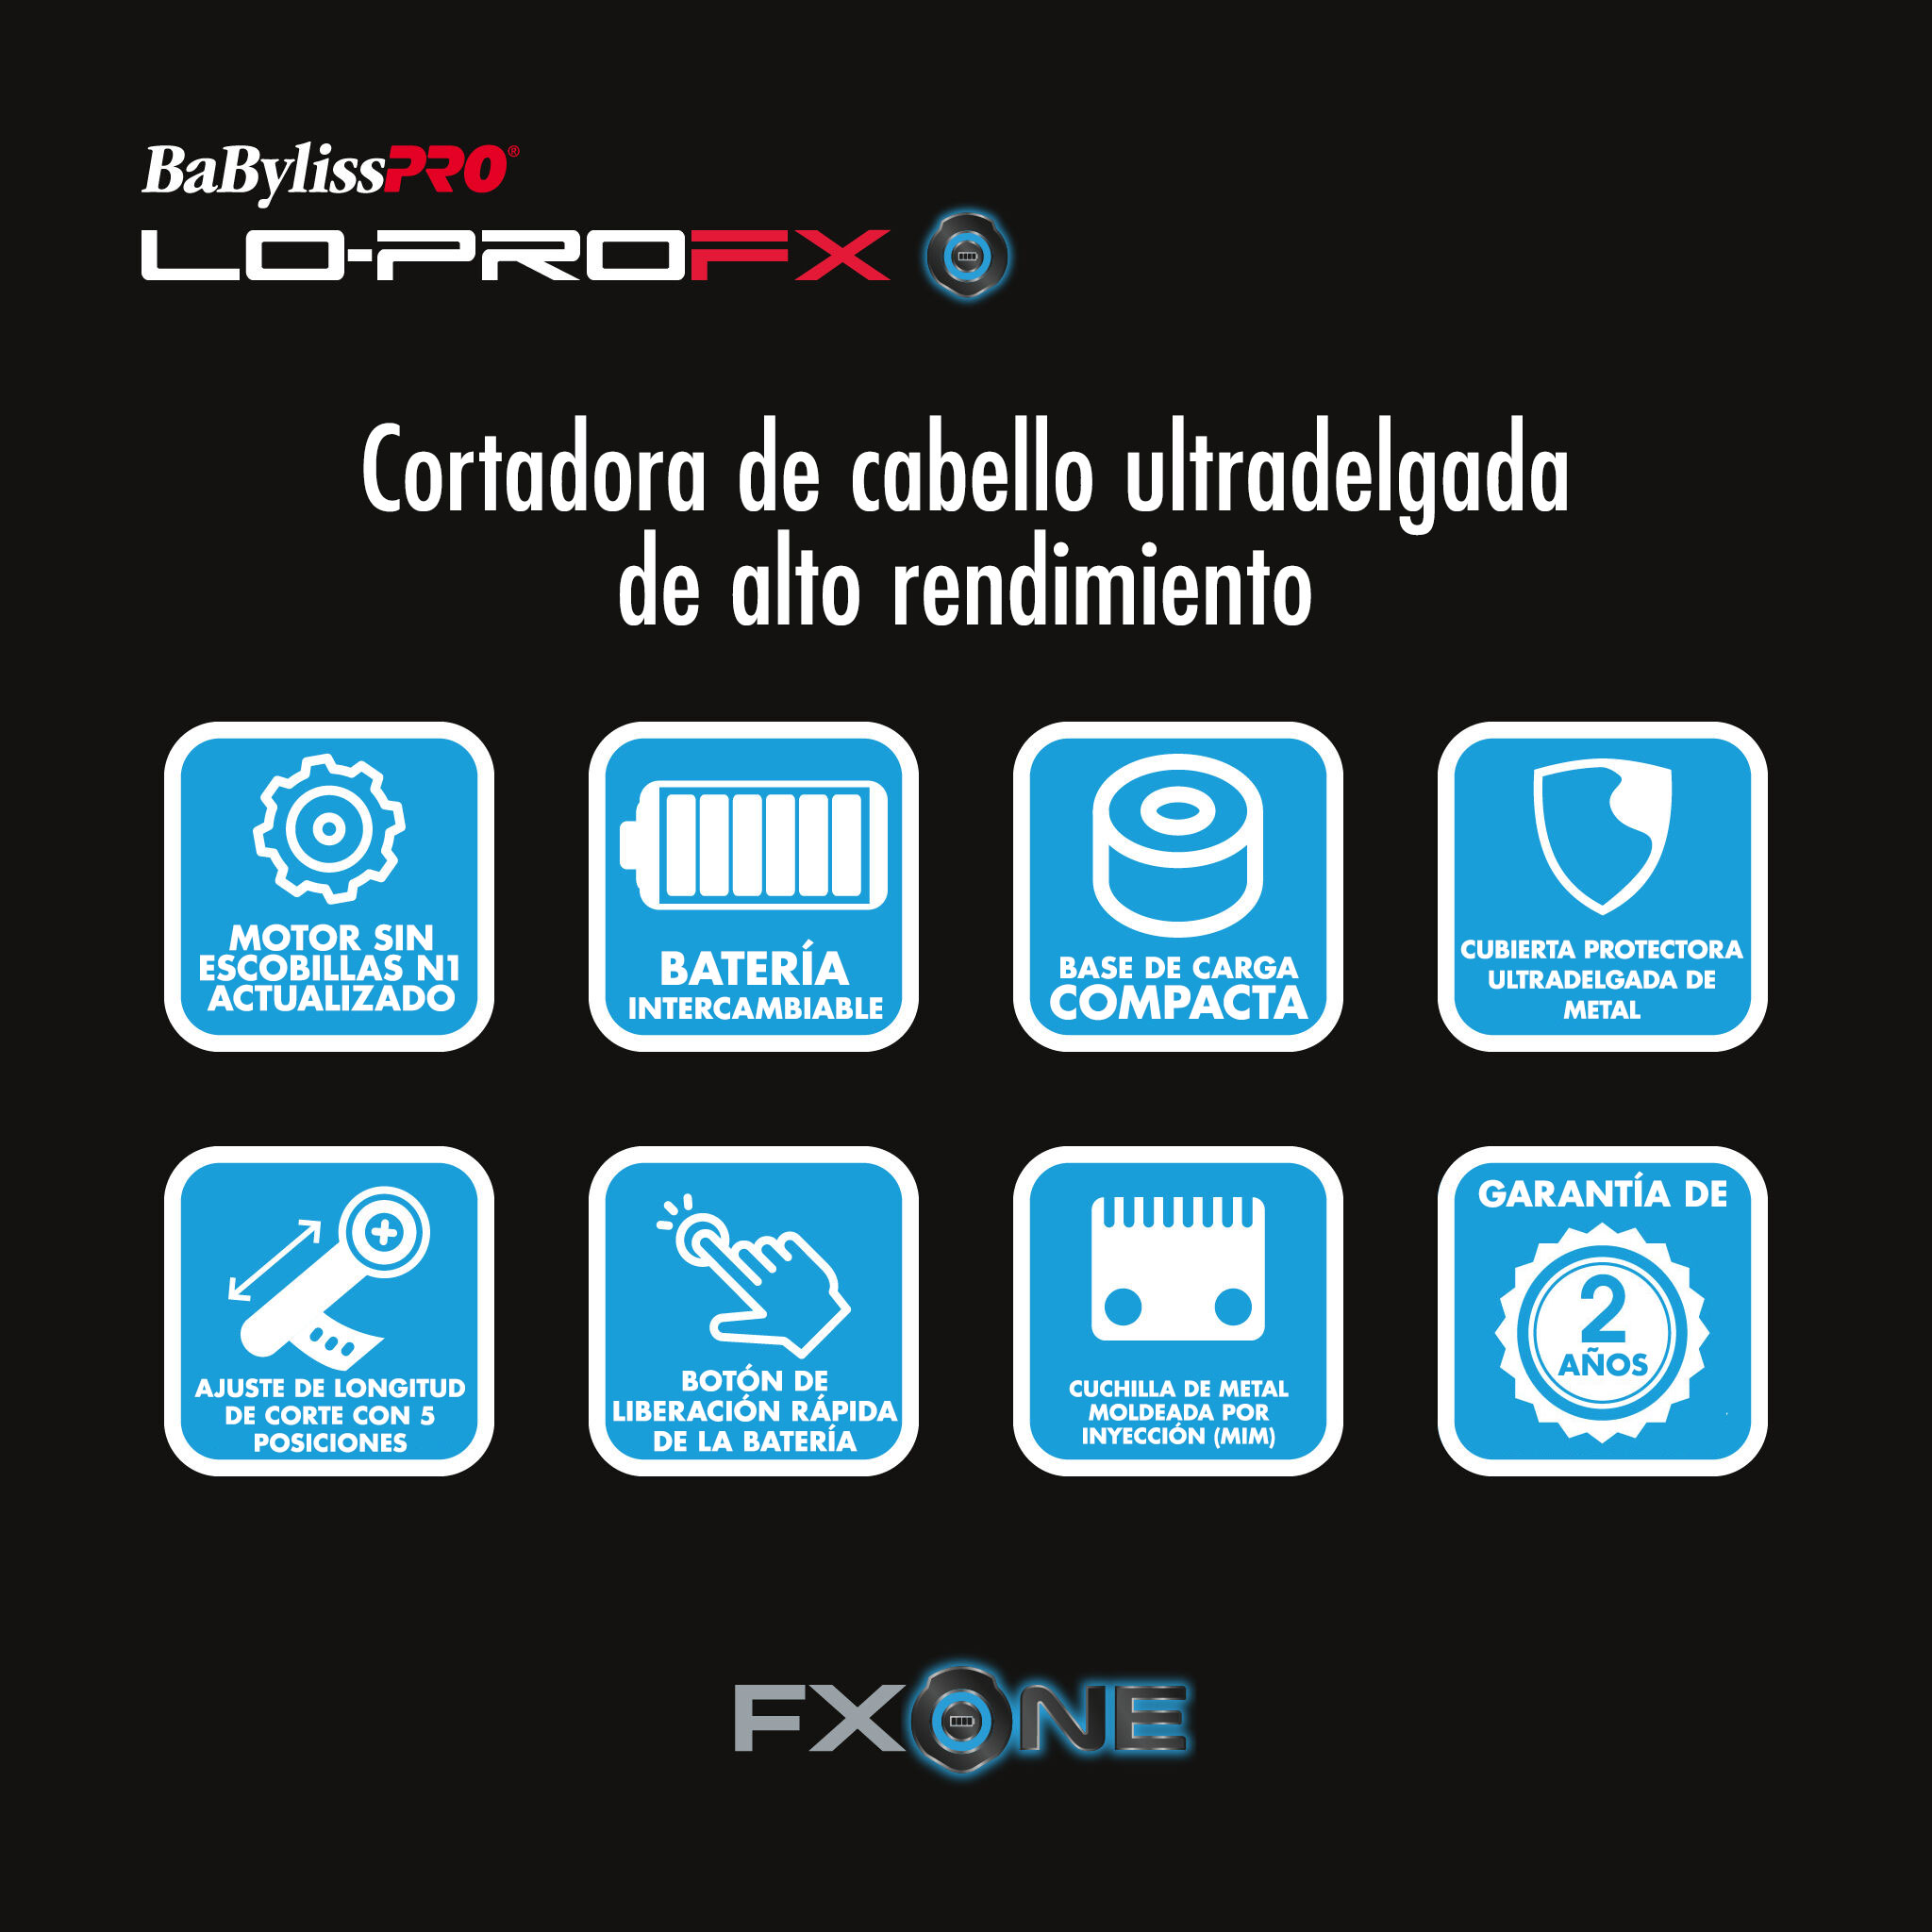 Cortadora ultradelgada de alto rendimiento FXONE™ Lo-ProFX de BaBylissPRO®